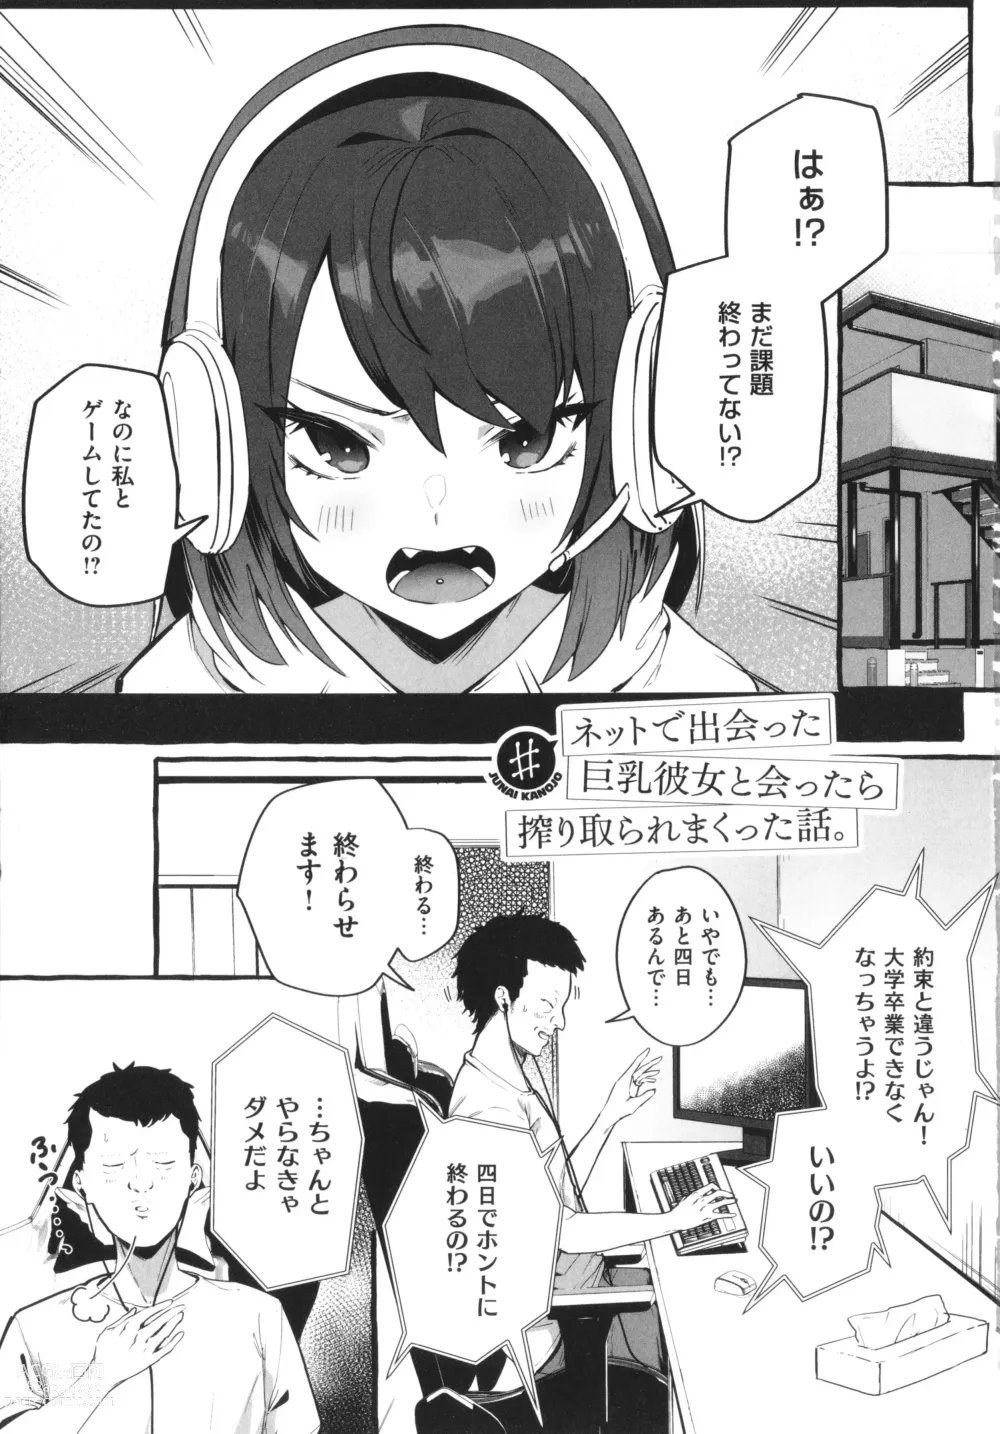 Page 6 of manga #Junai Kanojo